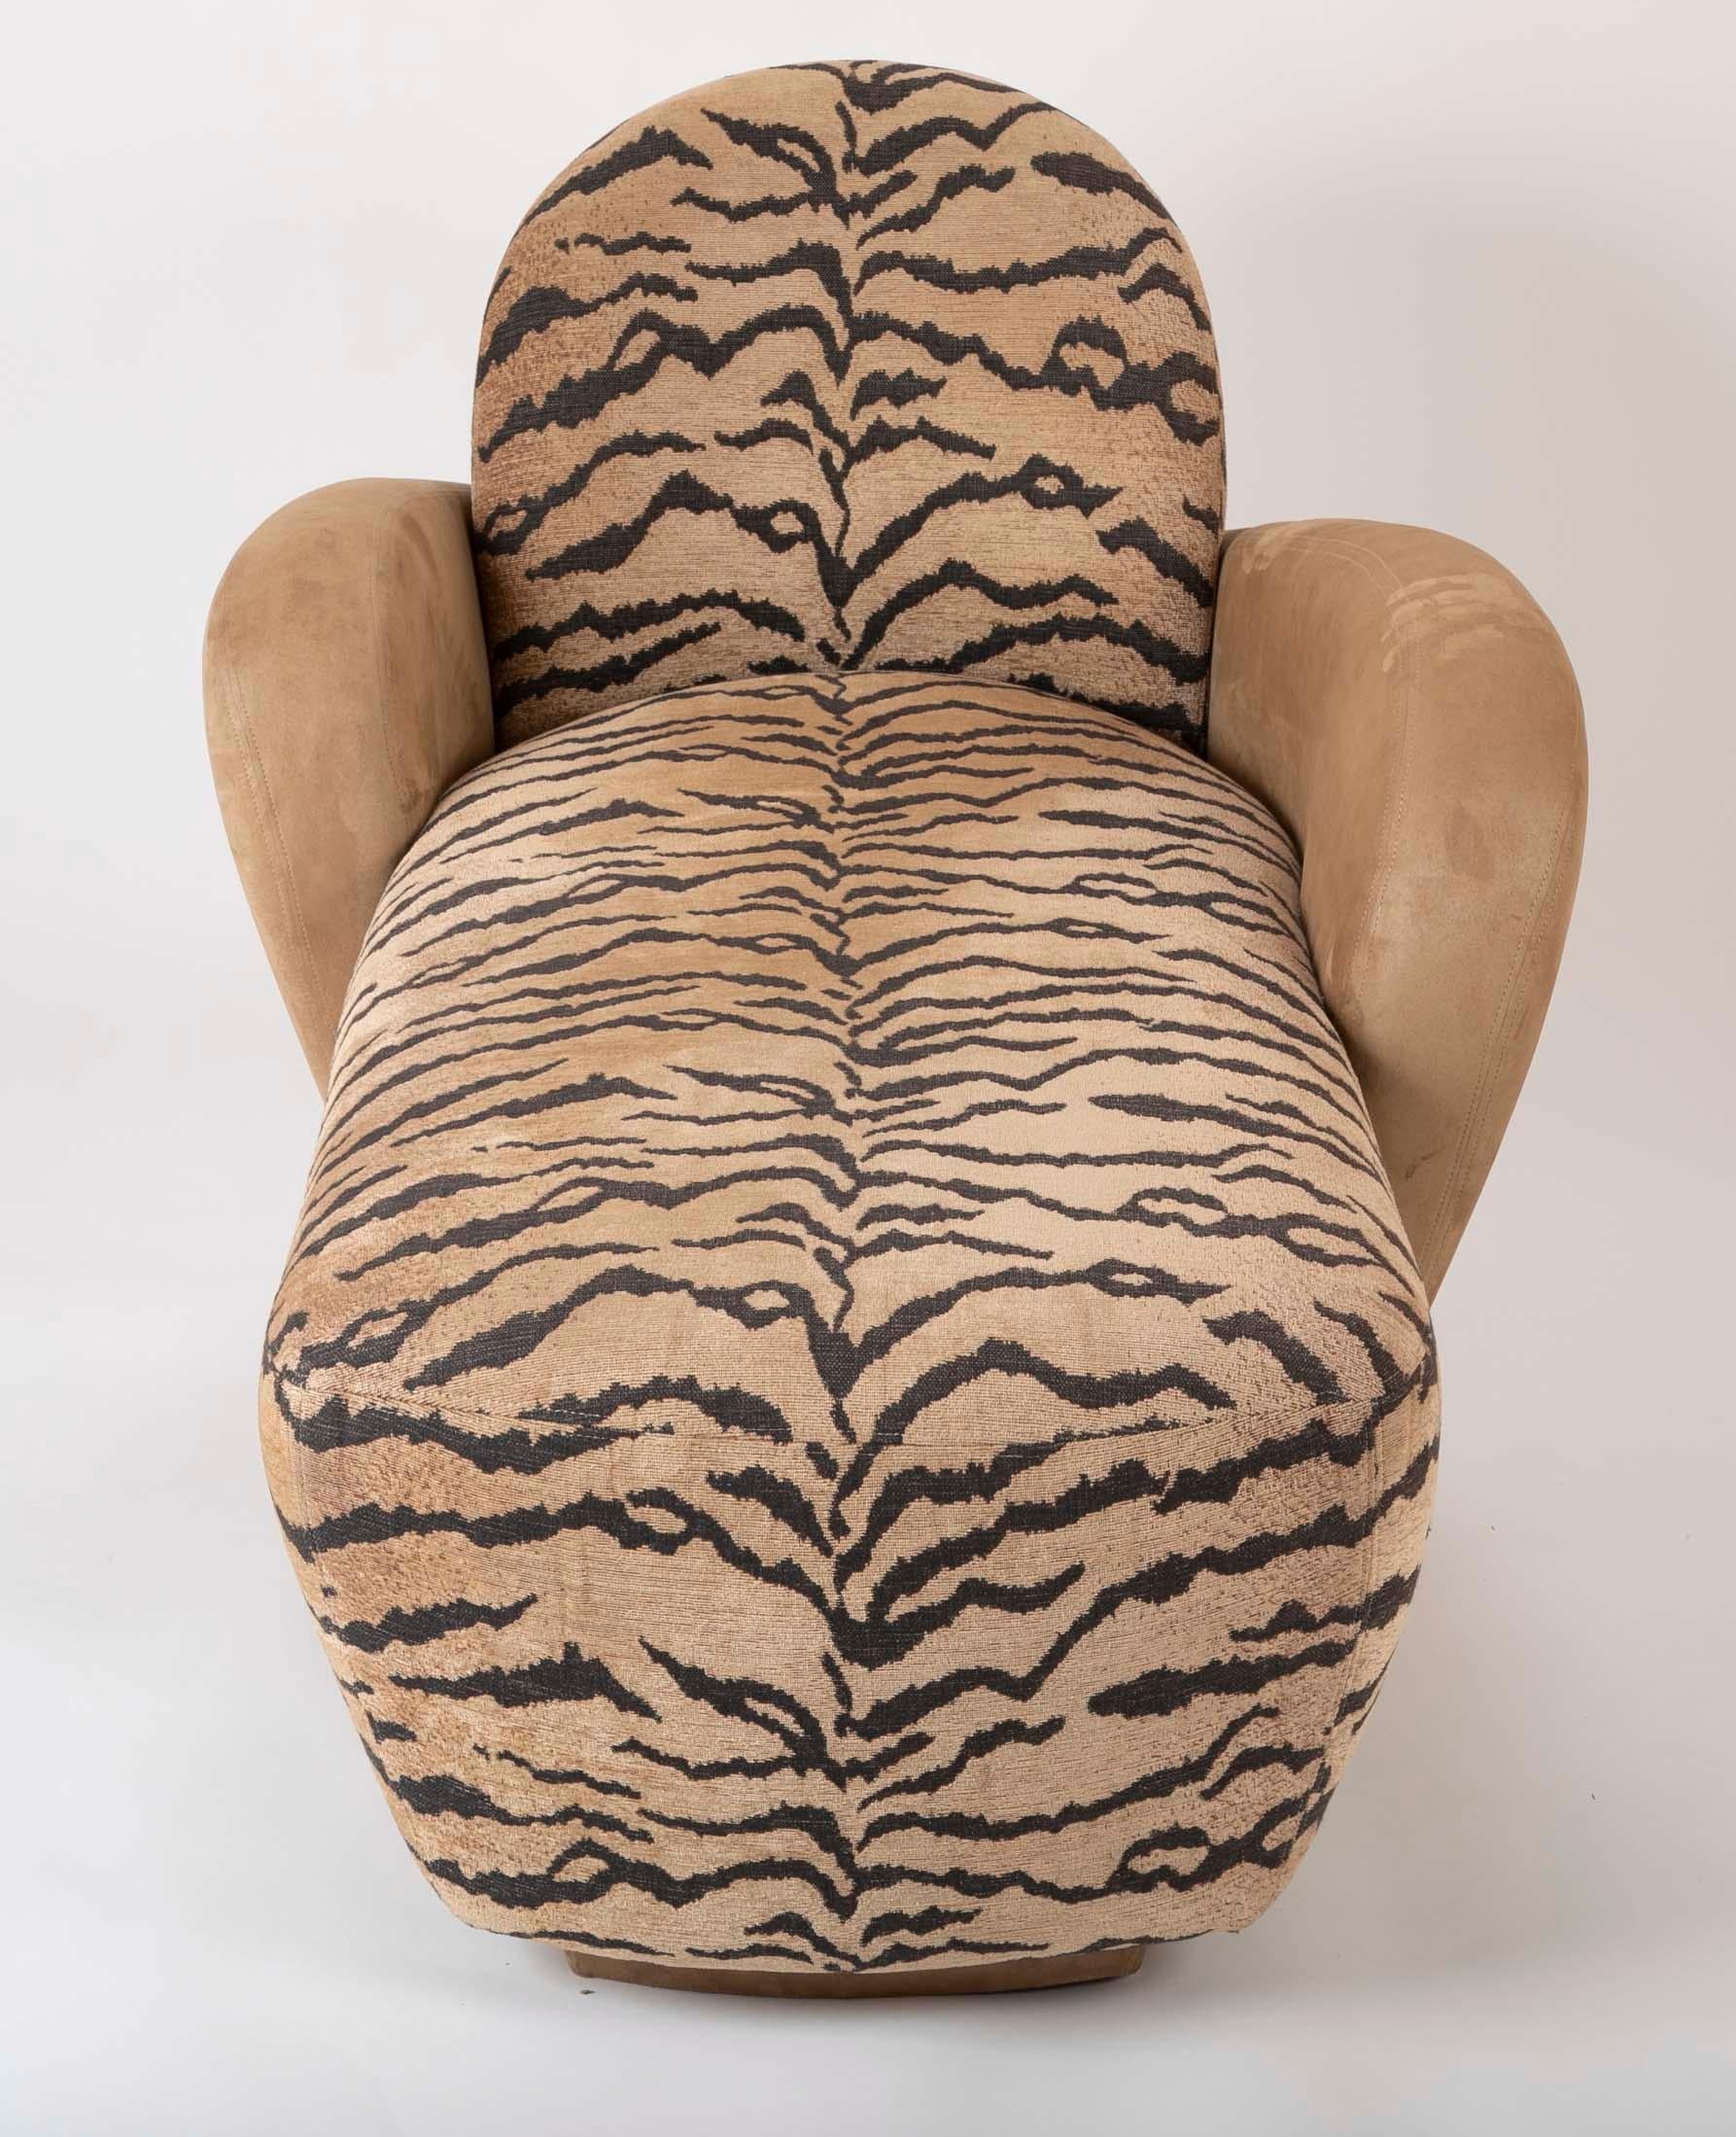 Ein wunderschönes Sofa/Chaise aus der Mitte des Jahrhunderts in Wildleder und Tigerstoff.
Maße: Sitzhöhe 18,5